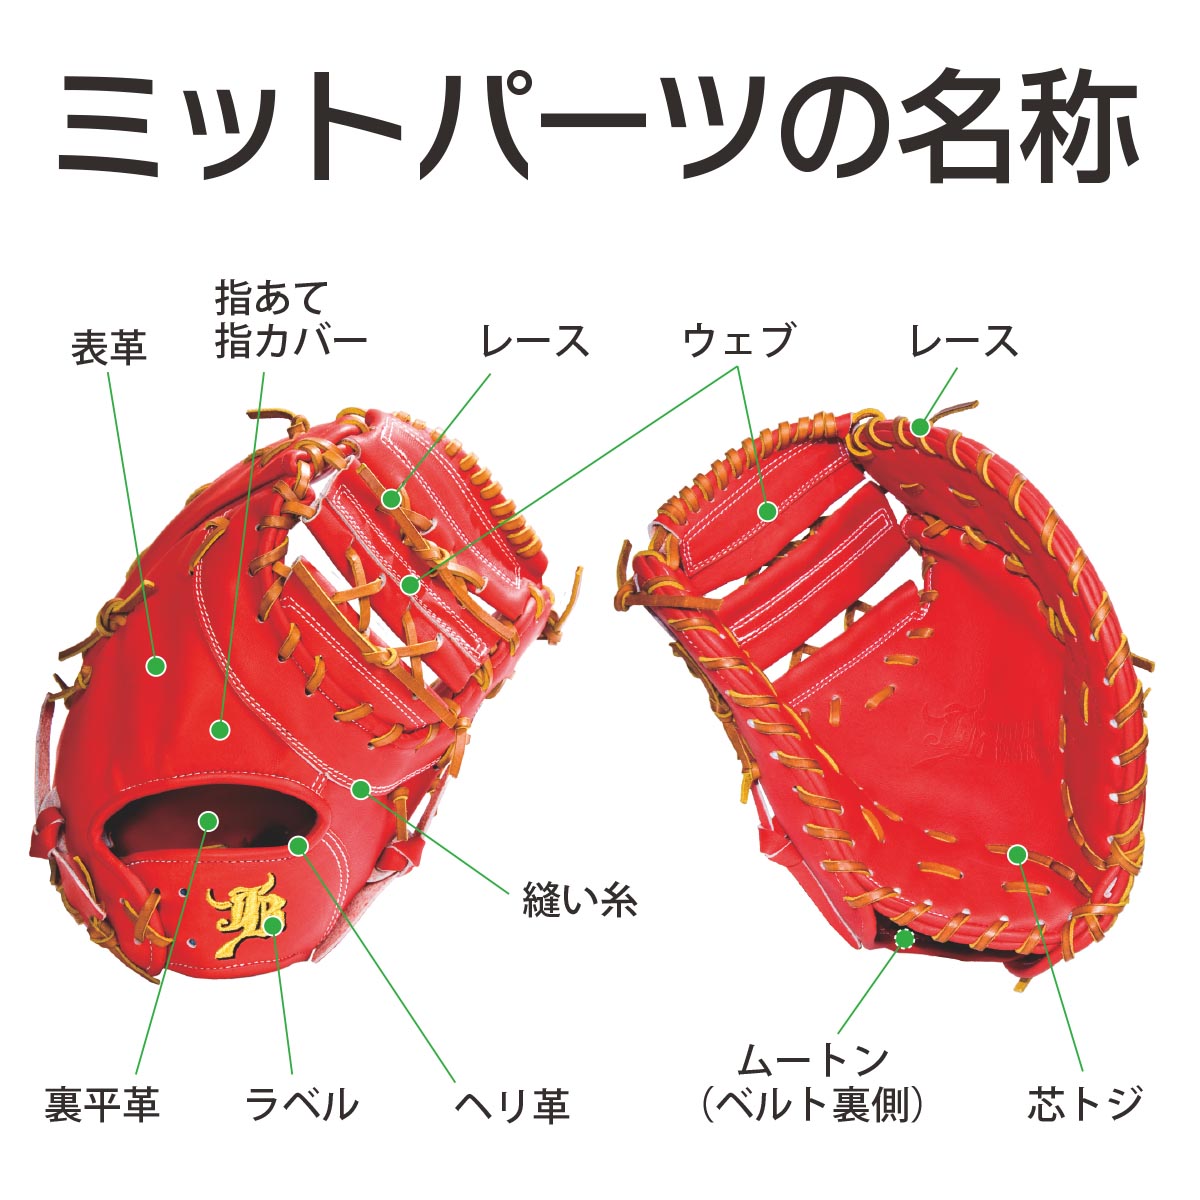 【オーダー】【一塁手】硬式高校野球ルール対応 和牛JBオーダーミット JB-003 - ボールパークドットコム